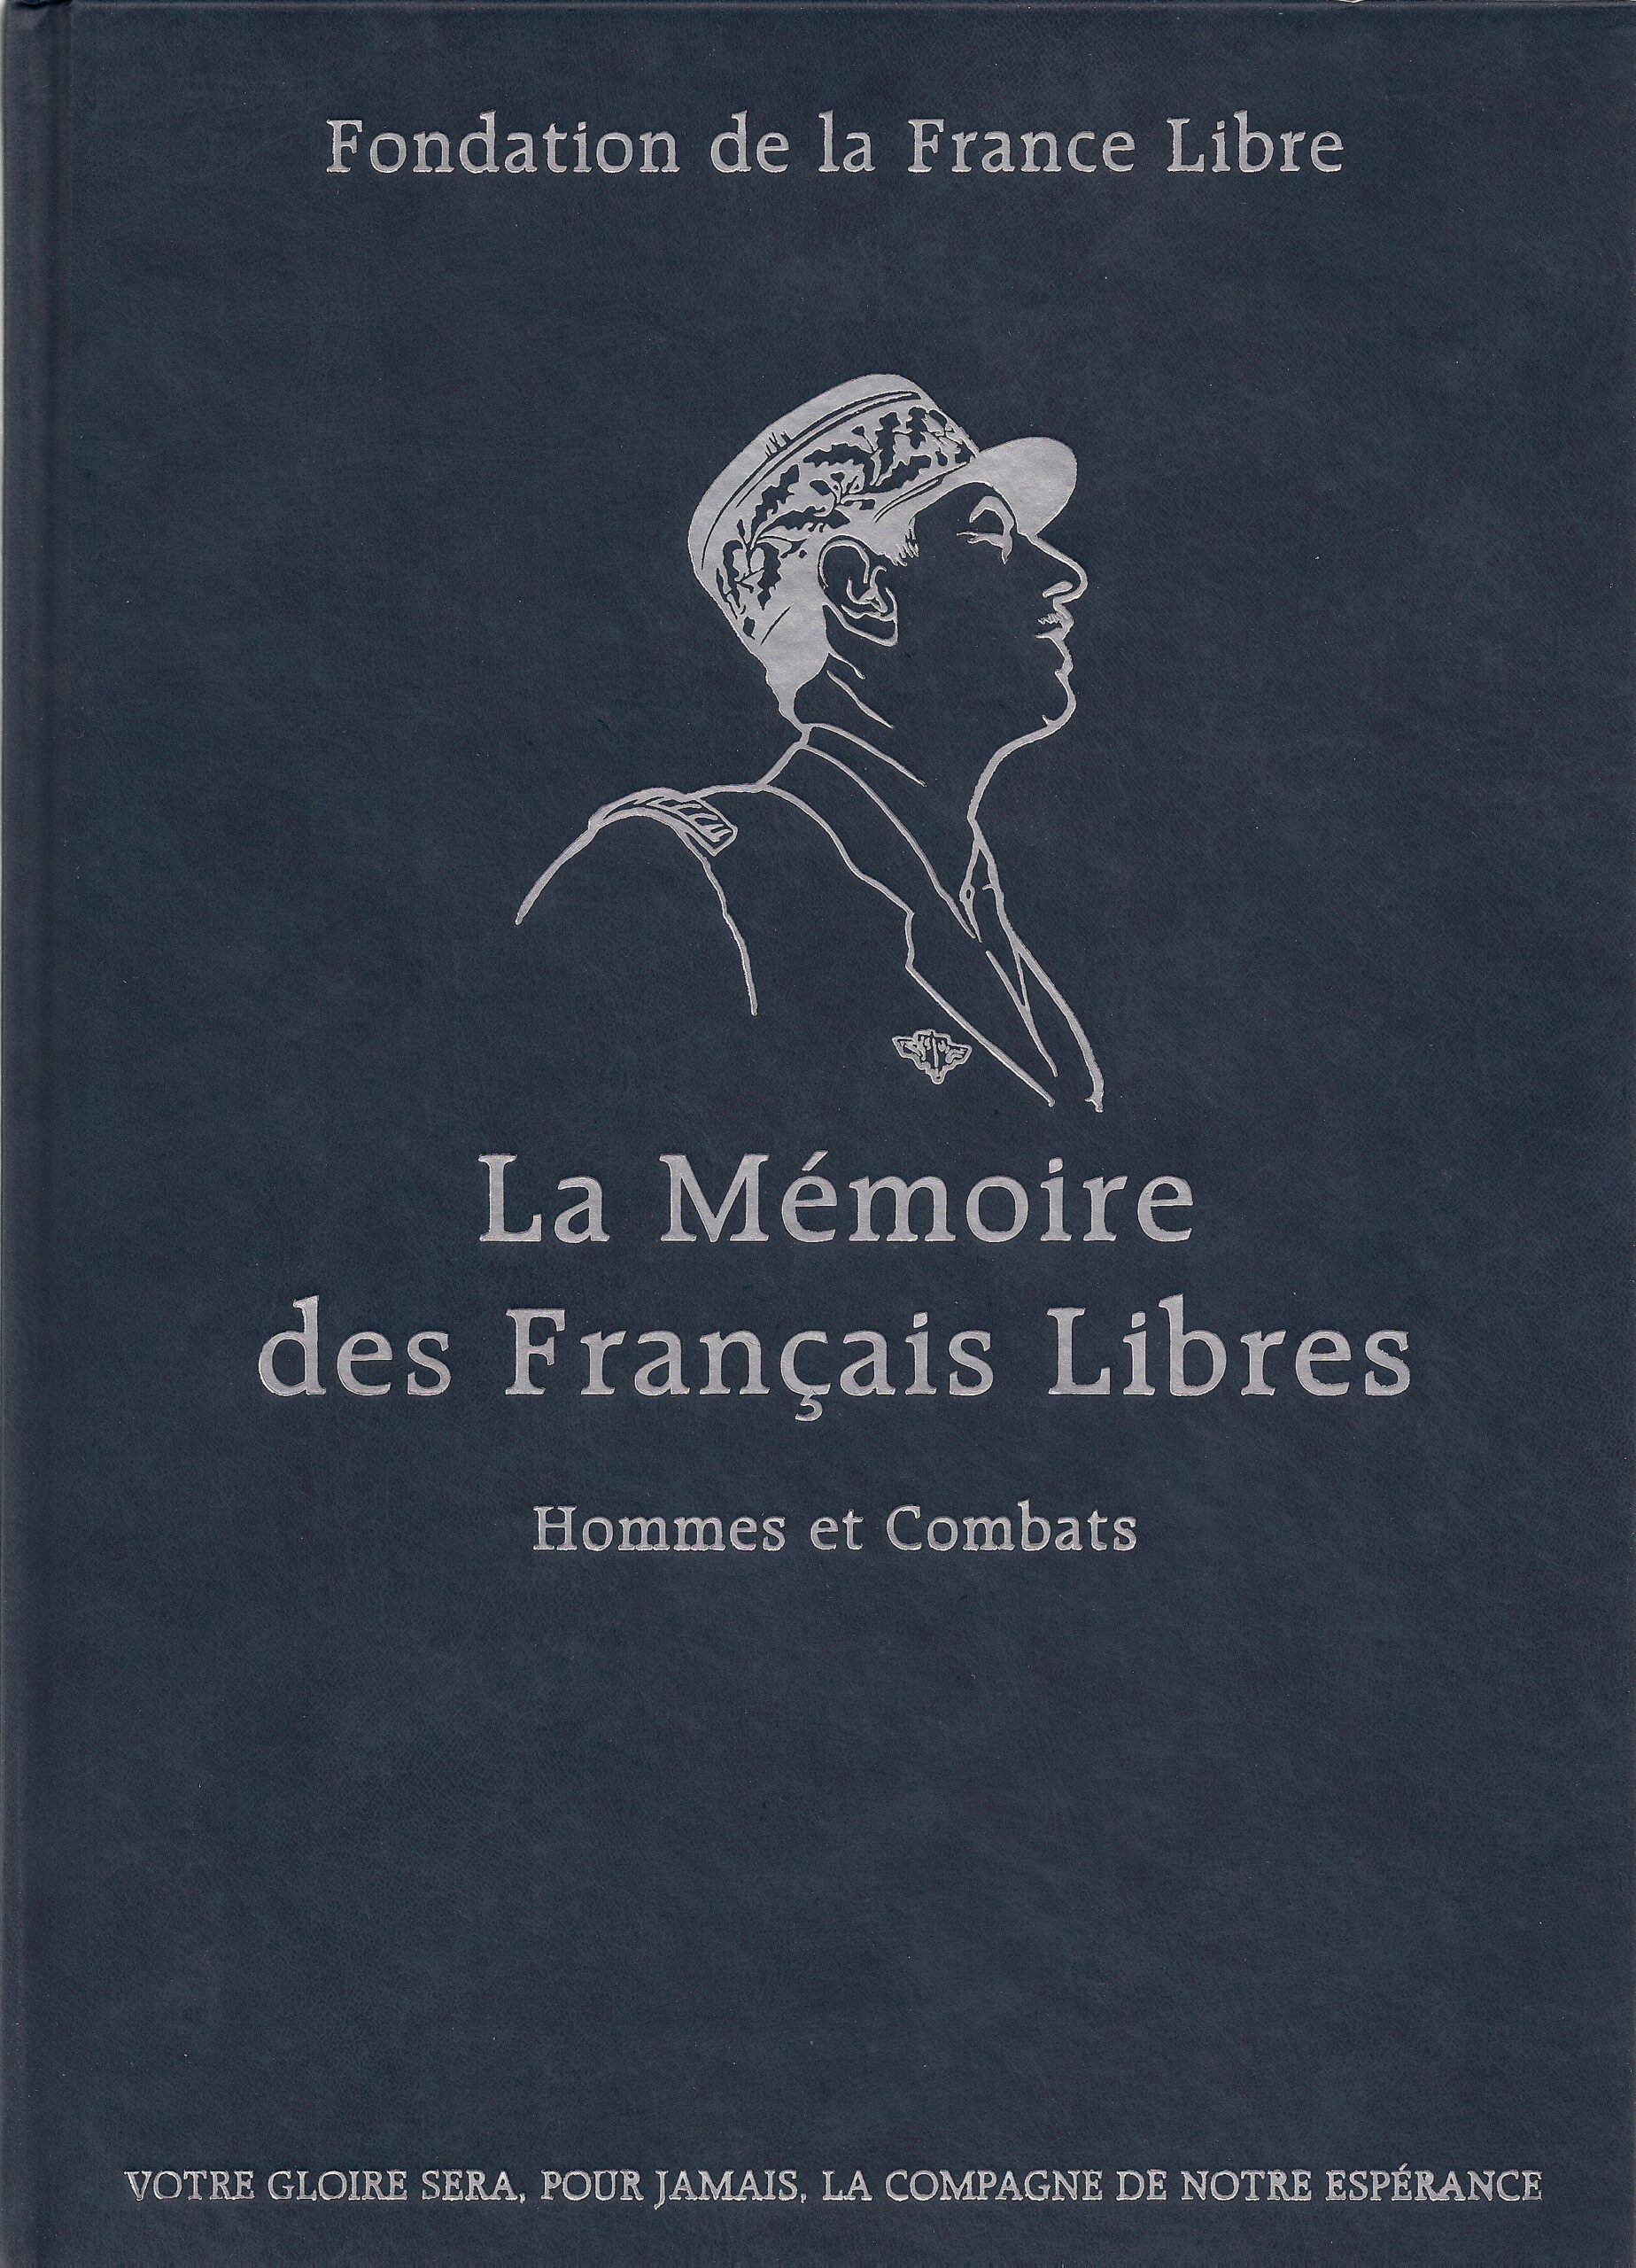 La mémoire des Francais libres – hommes et combats